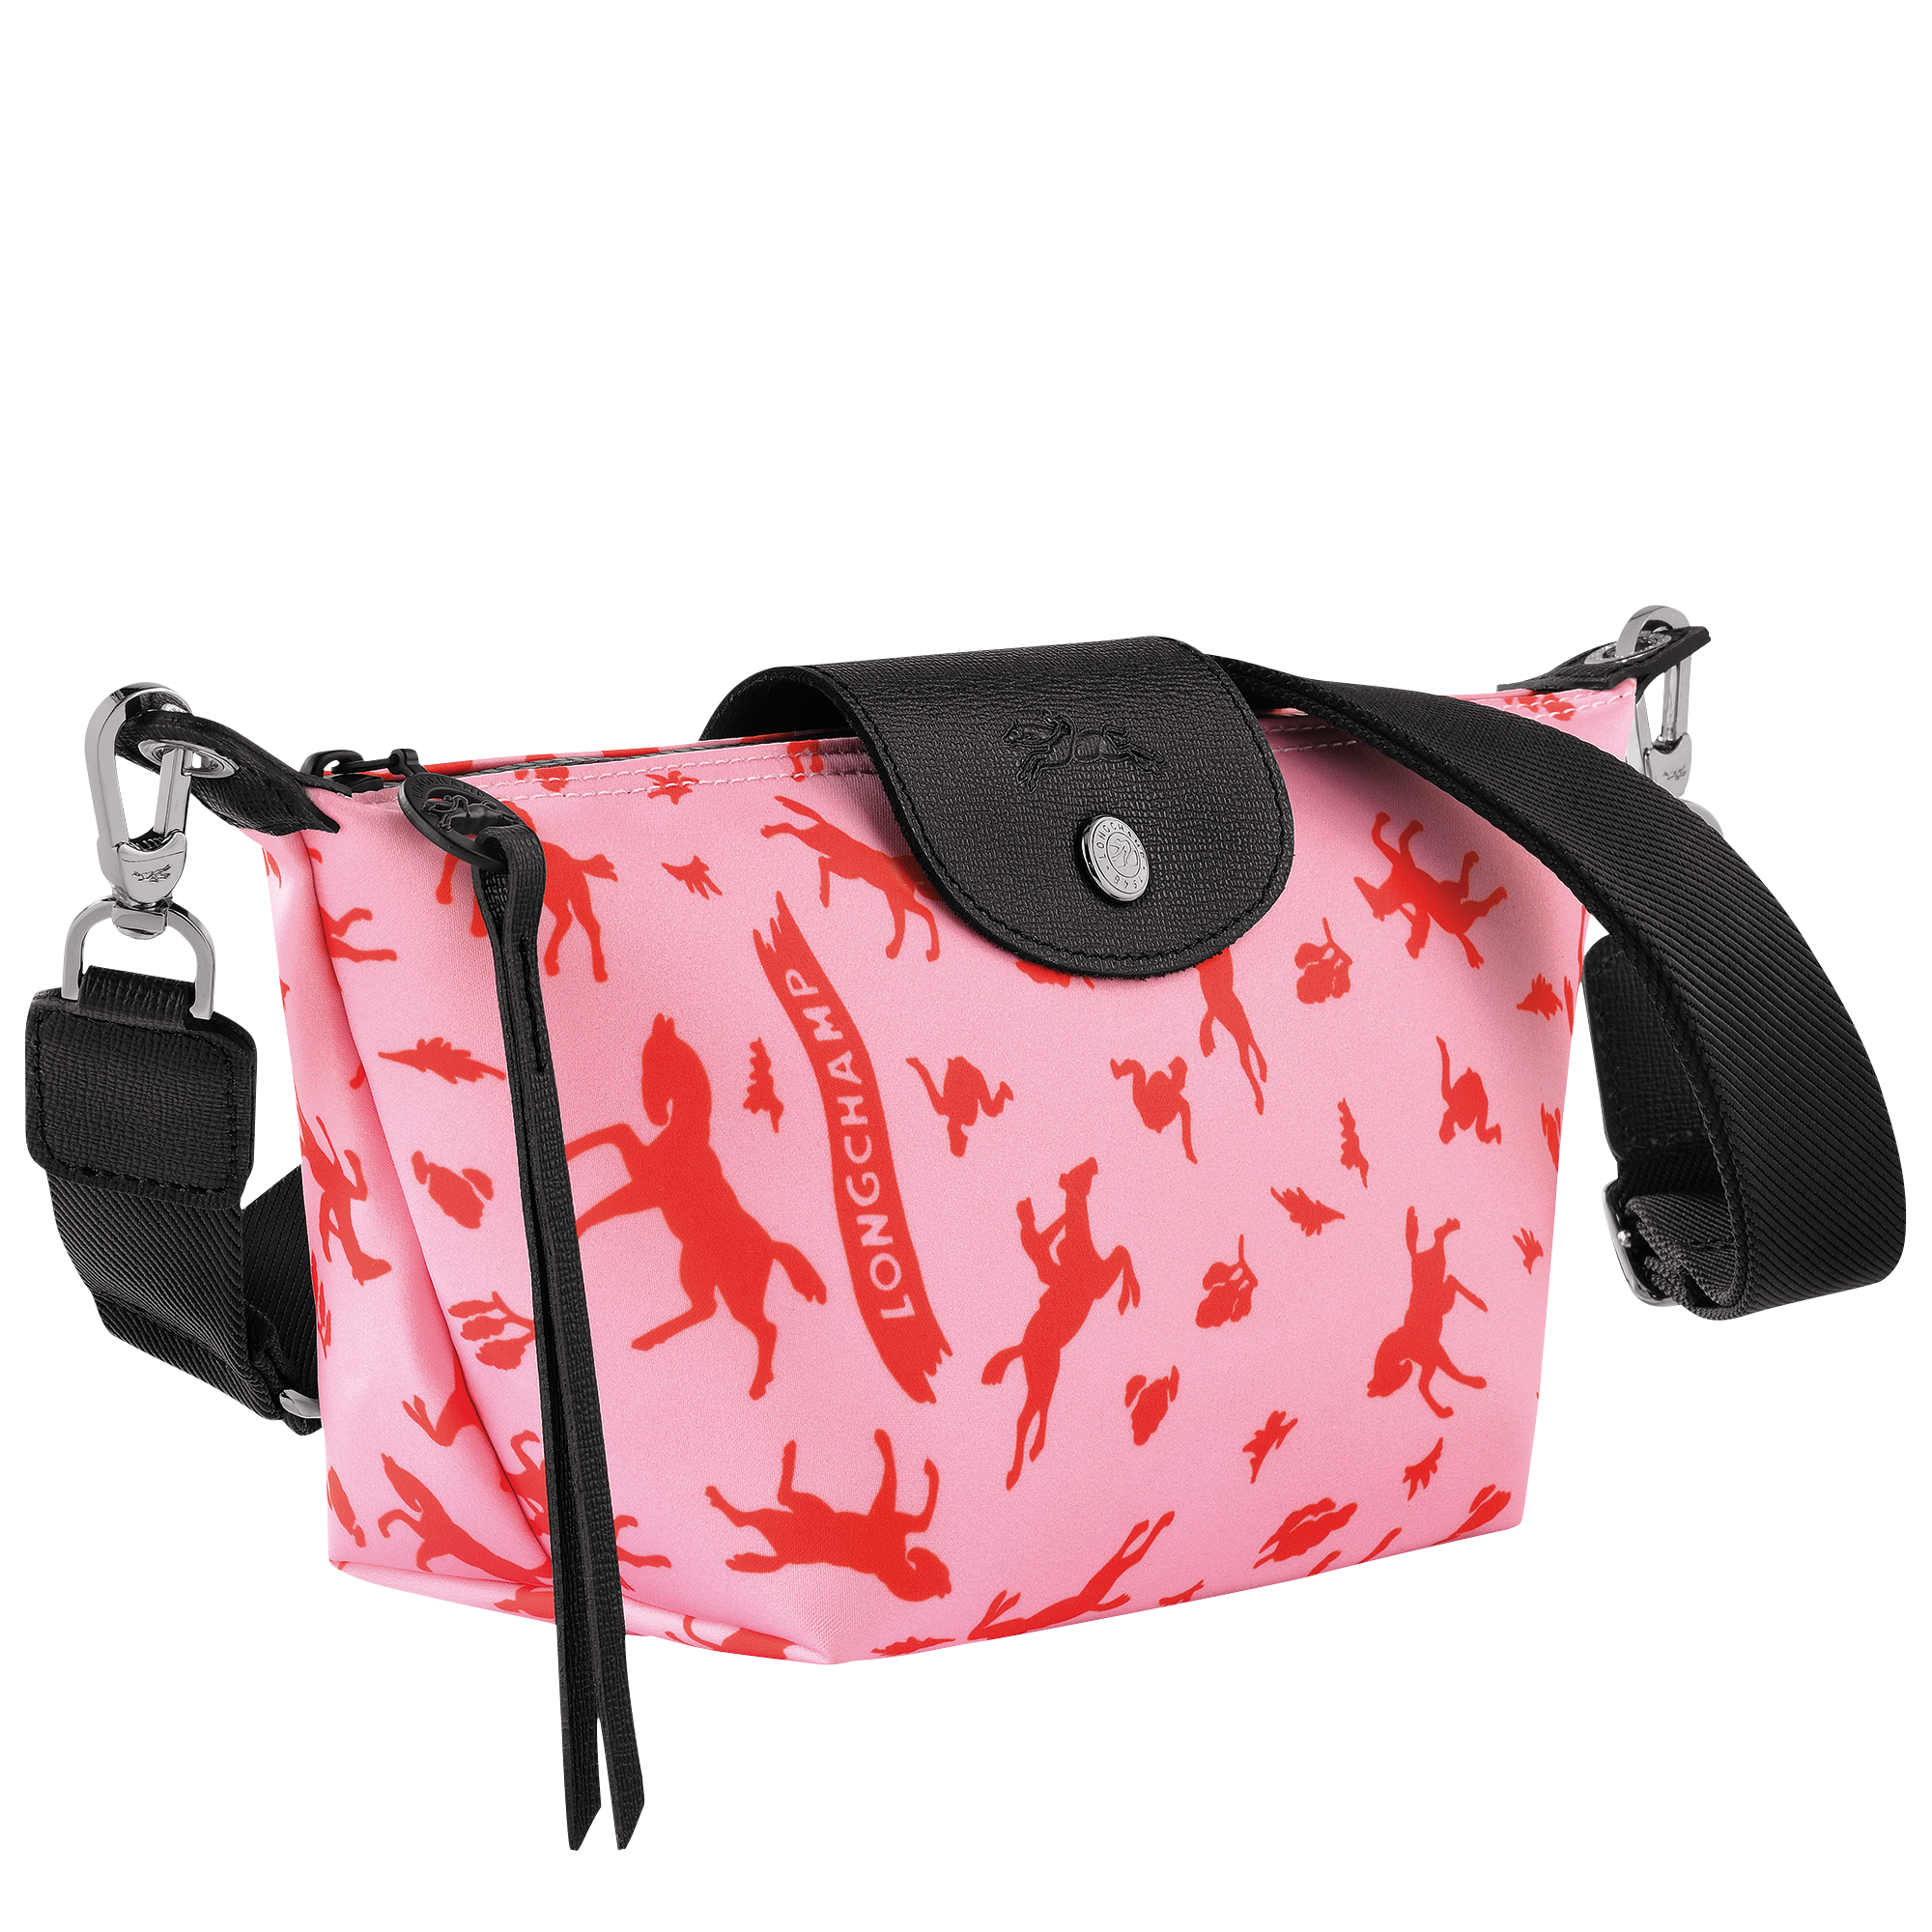 small le pliage longchamp bag pink｜TikTok Search